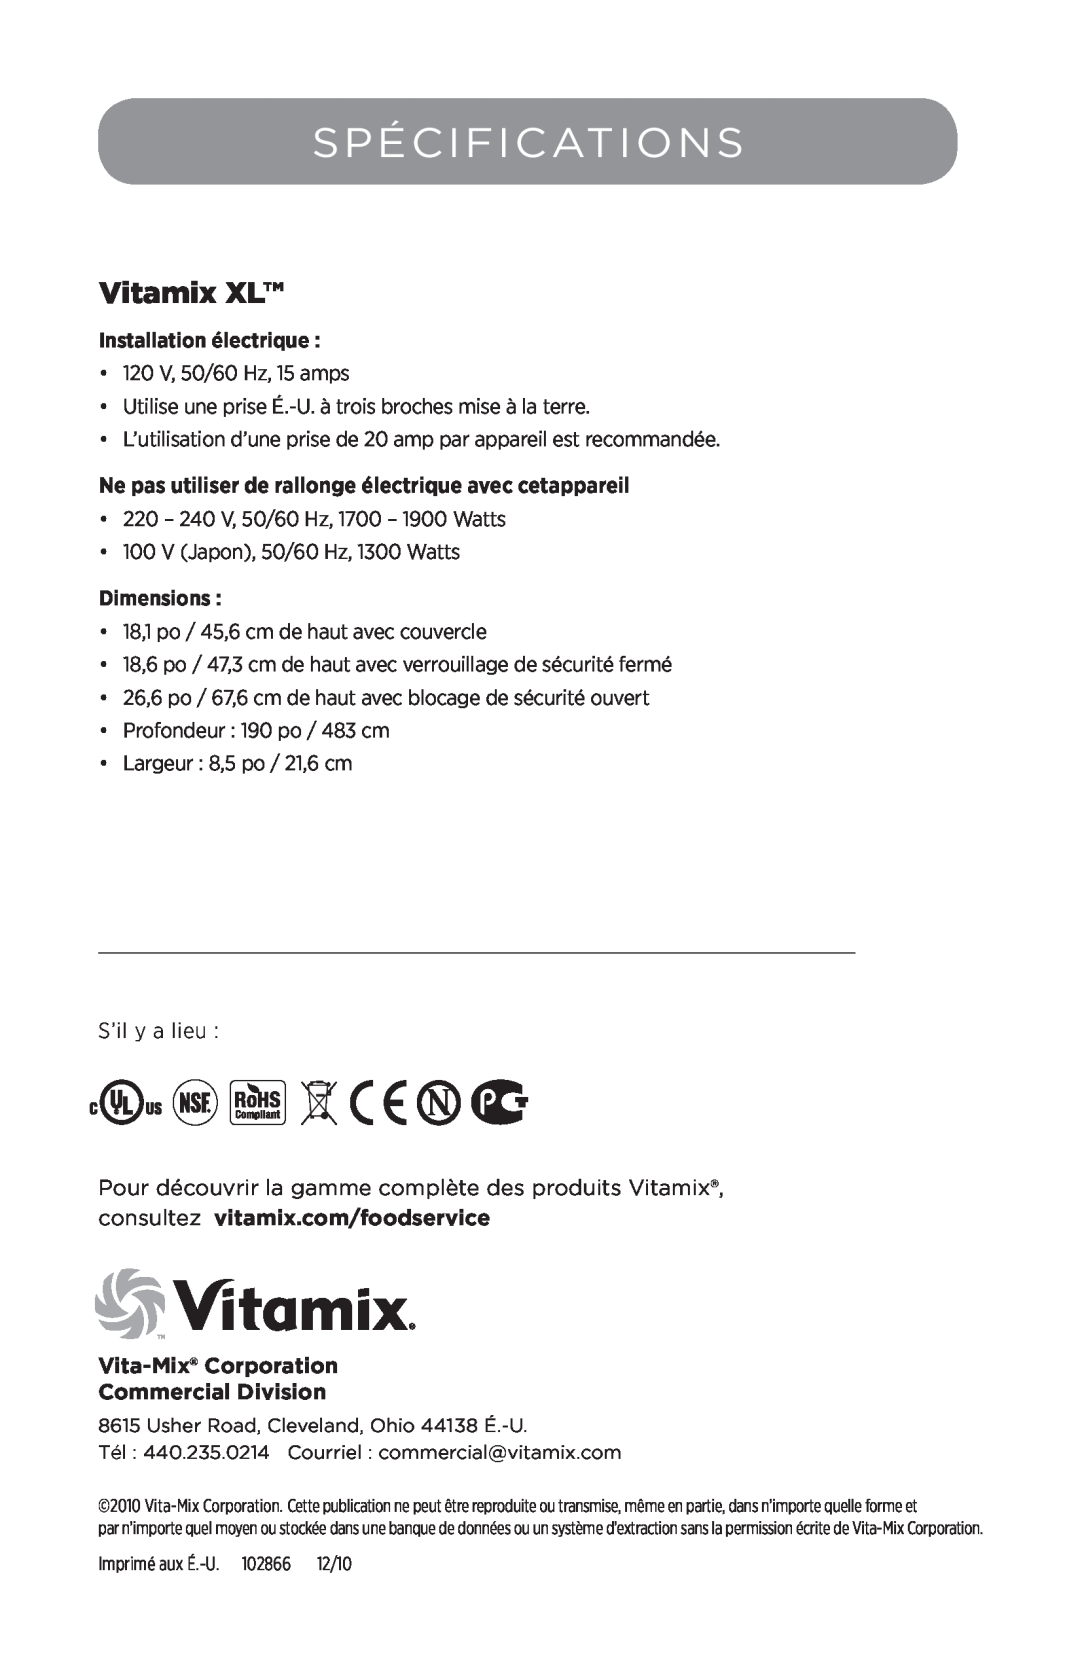 Vita-Mix 102866 manual Spécifications, Vitamix XL, Ne pas utiliser de rallonge électrique avec cetappareil, Dimensions 